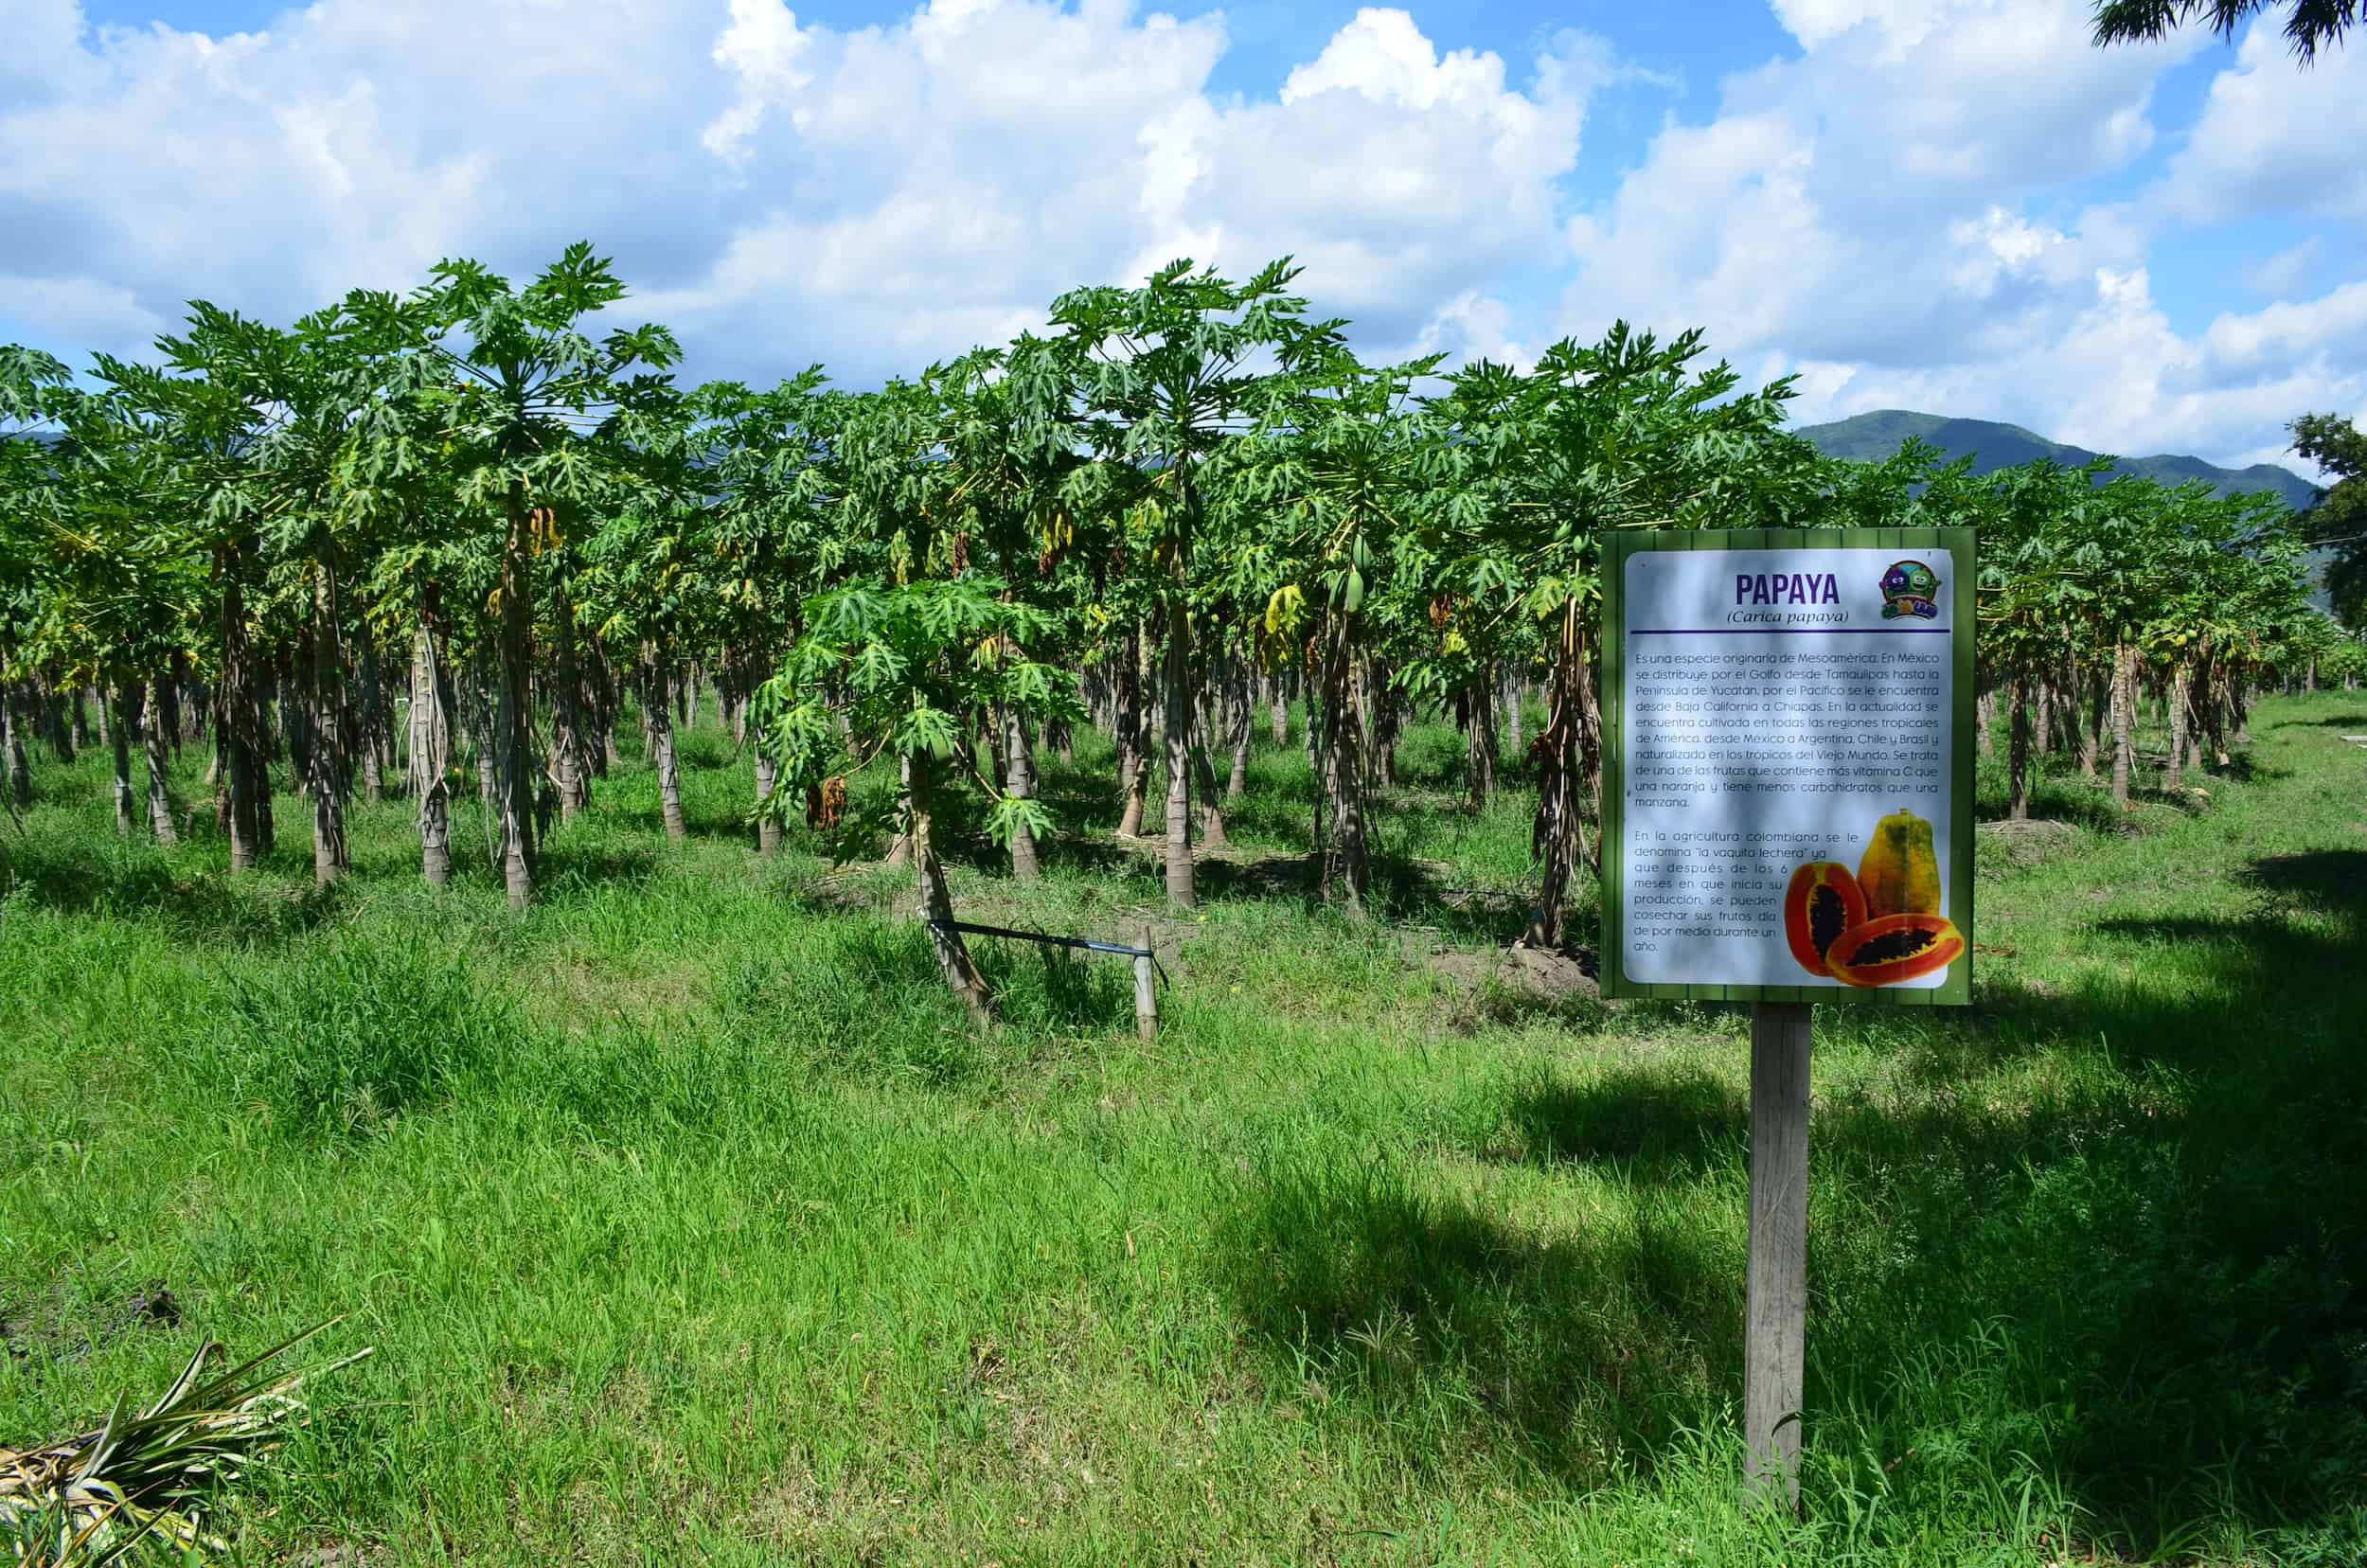 Papaya grove